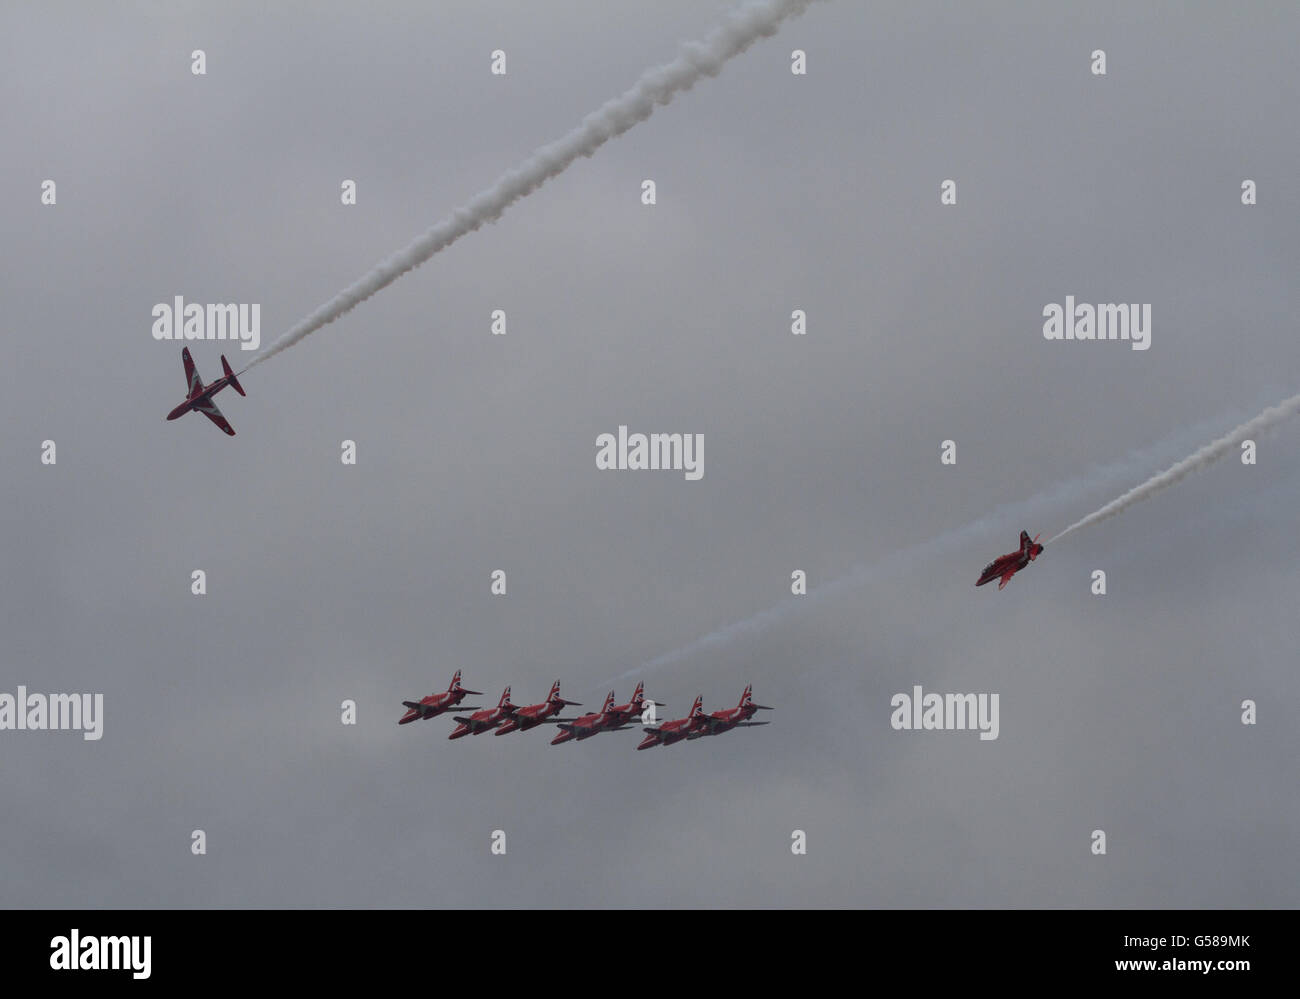 L'équipe de démonstration de voltige aérienne de la RAF, les flèches rouges paire Syncro rejoindre. Banque D'Images